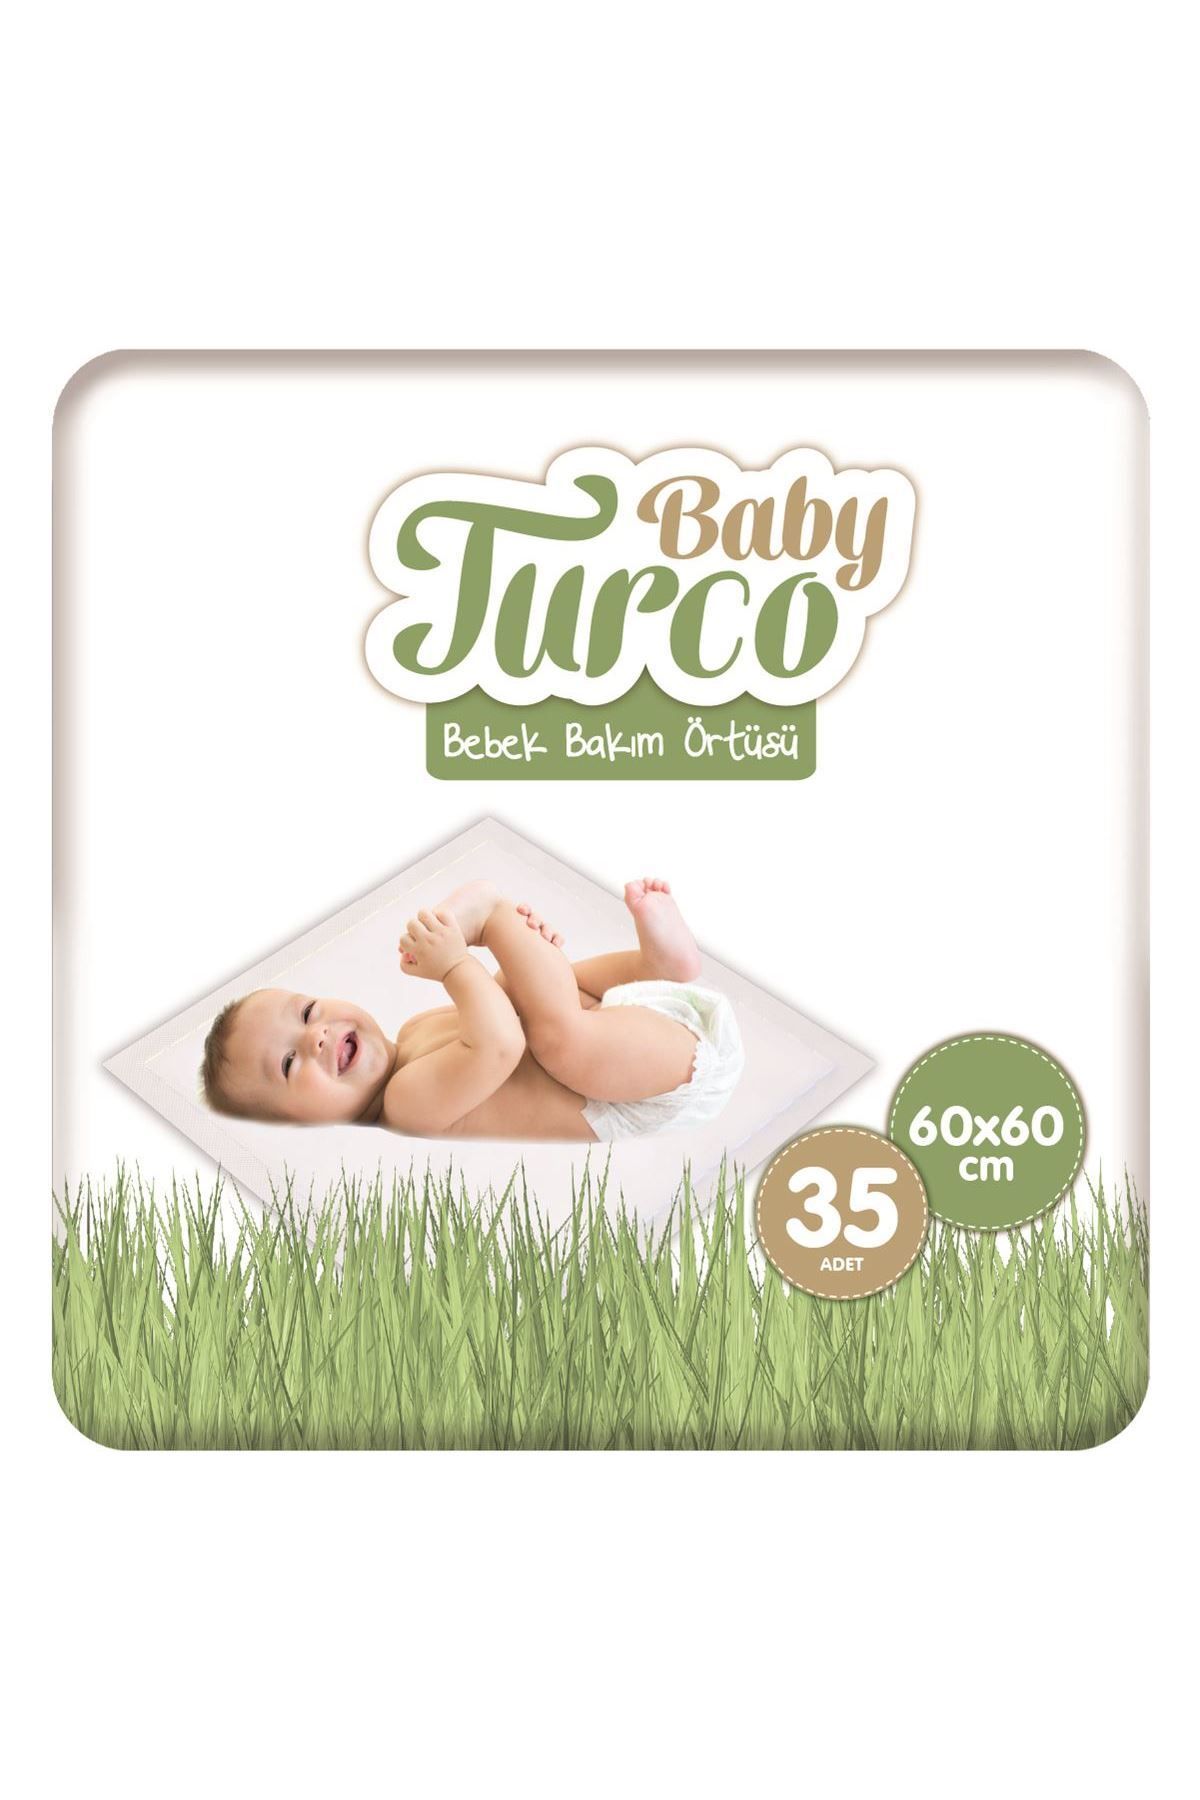 Baby Turco Bebek Bakım Örtüsü 60x60 Cm 7x5 35 Adet